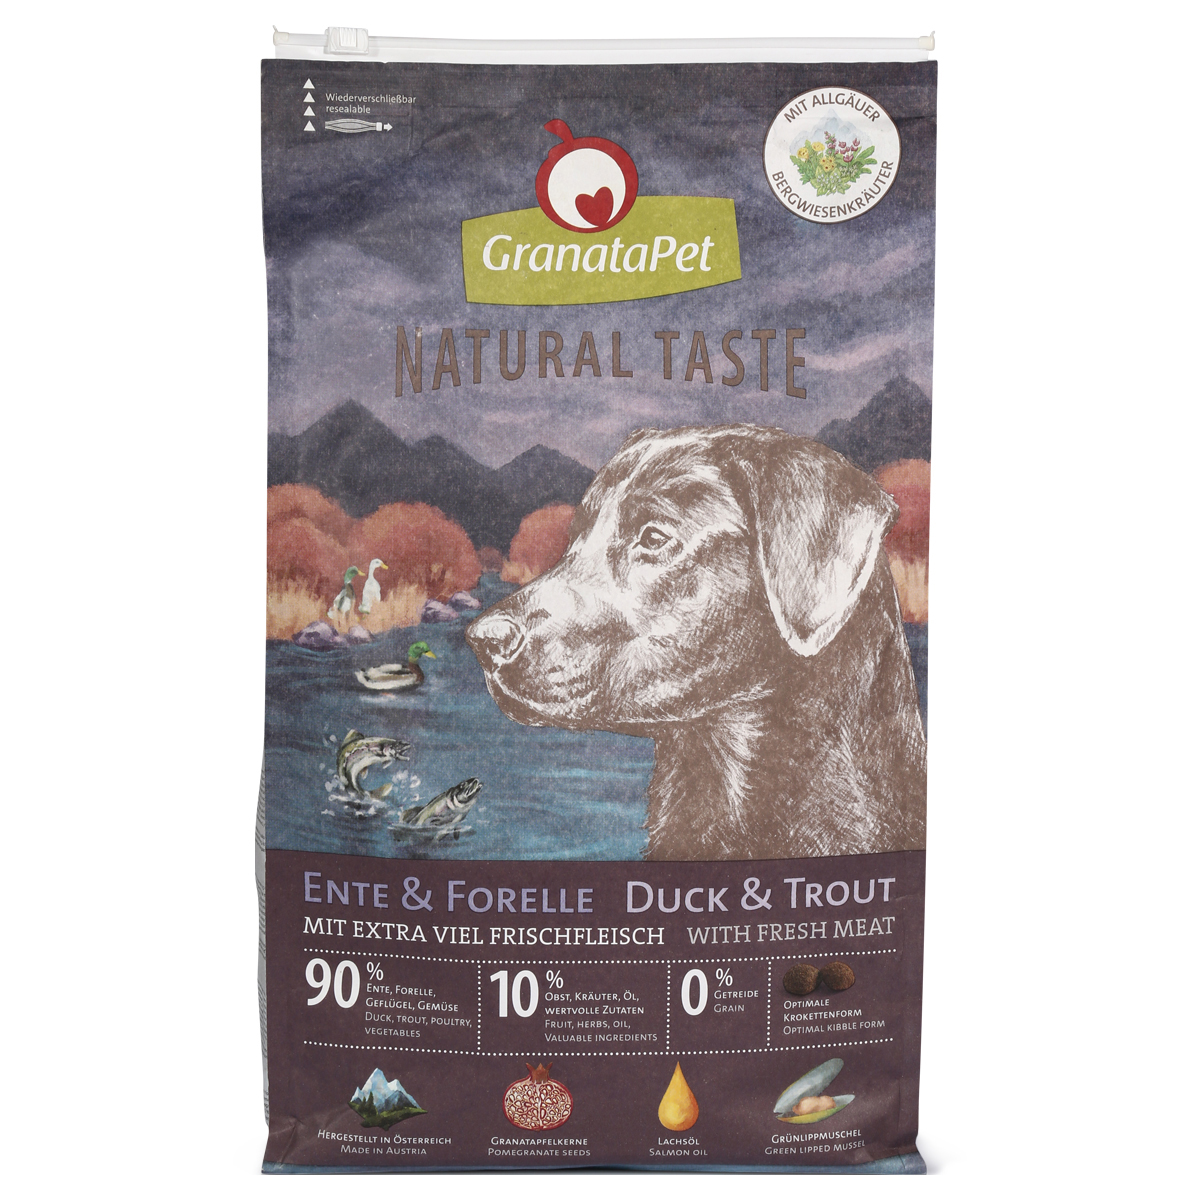 GranataPet Natural Taste – s kachnou a pstruhem